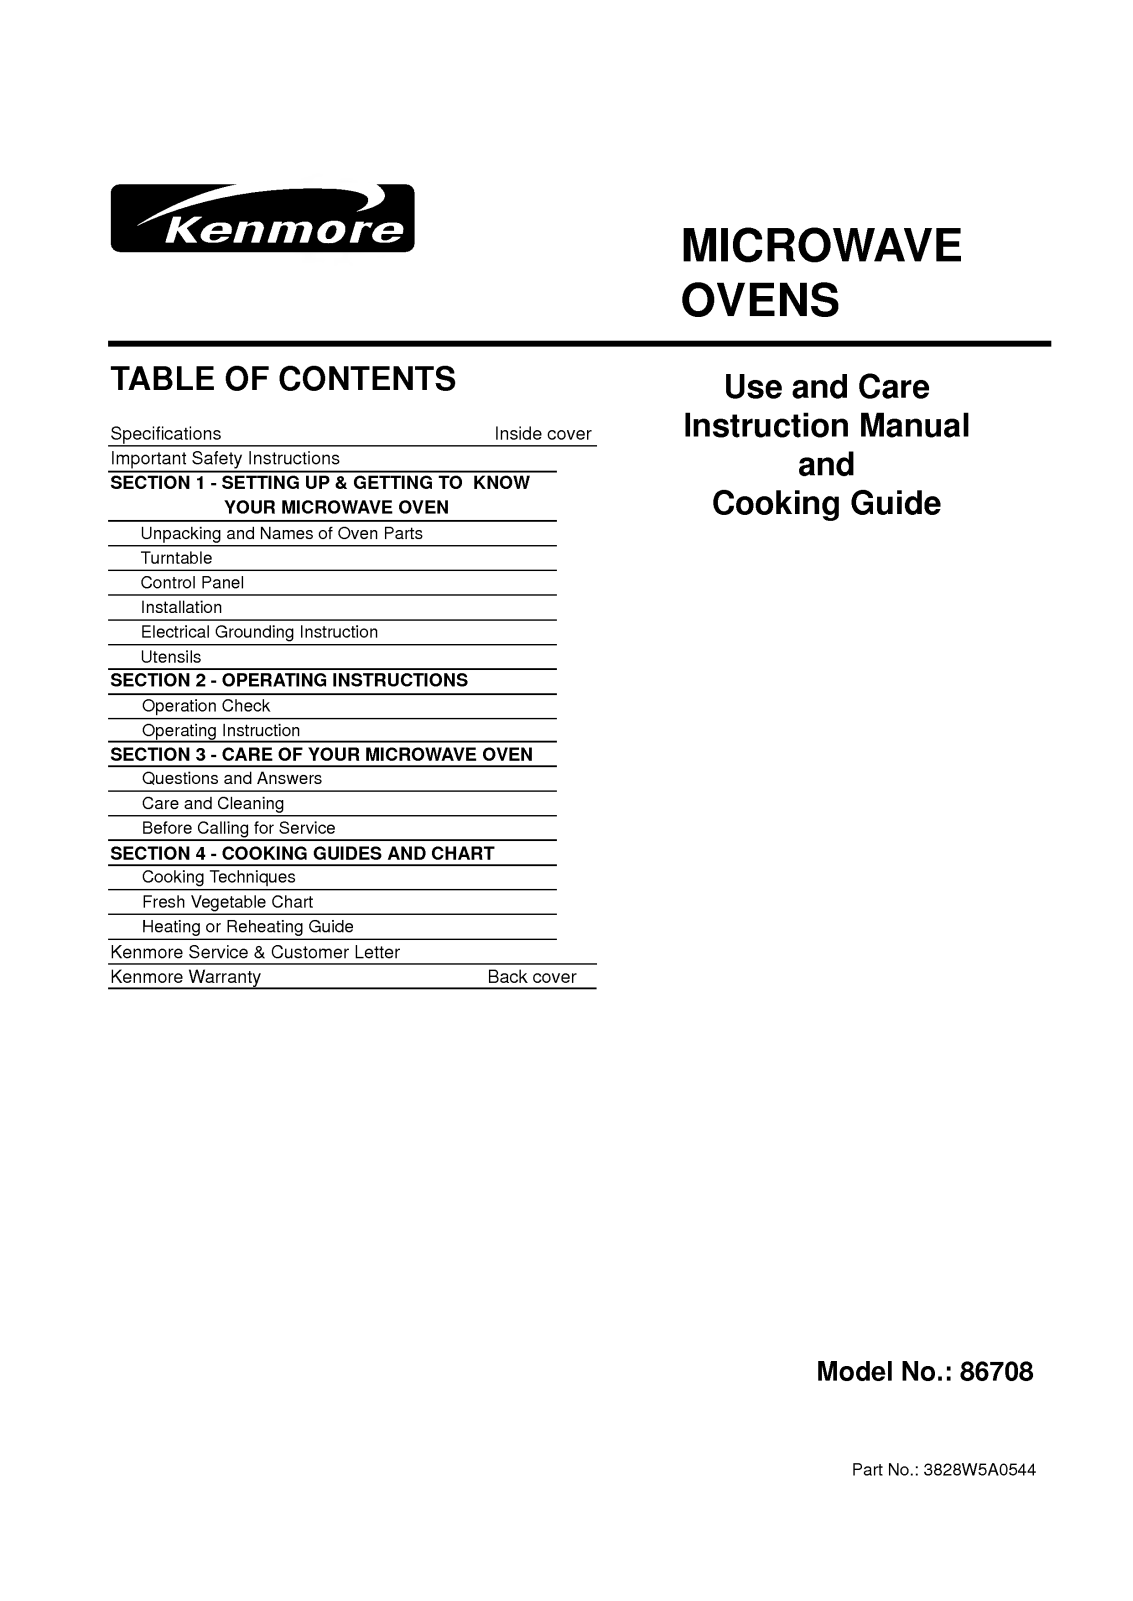 LG 86708 User Manual